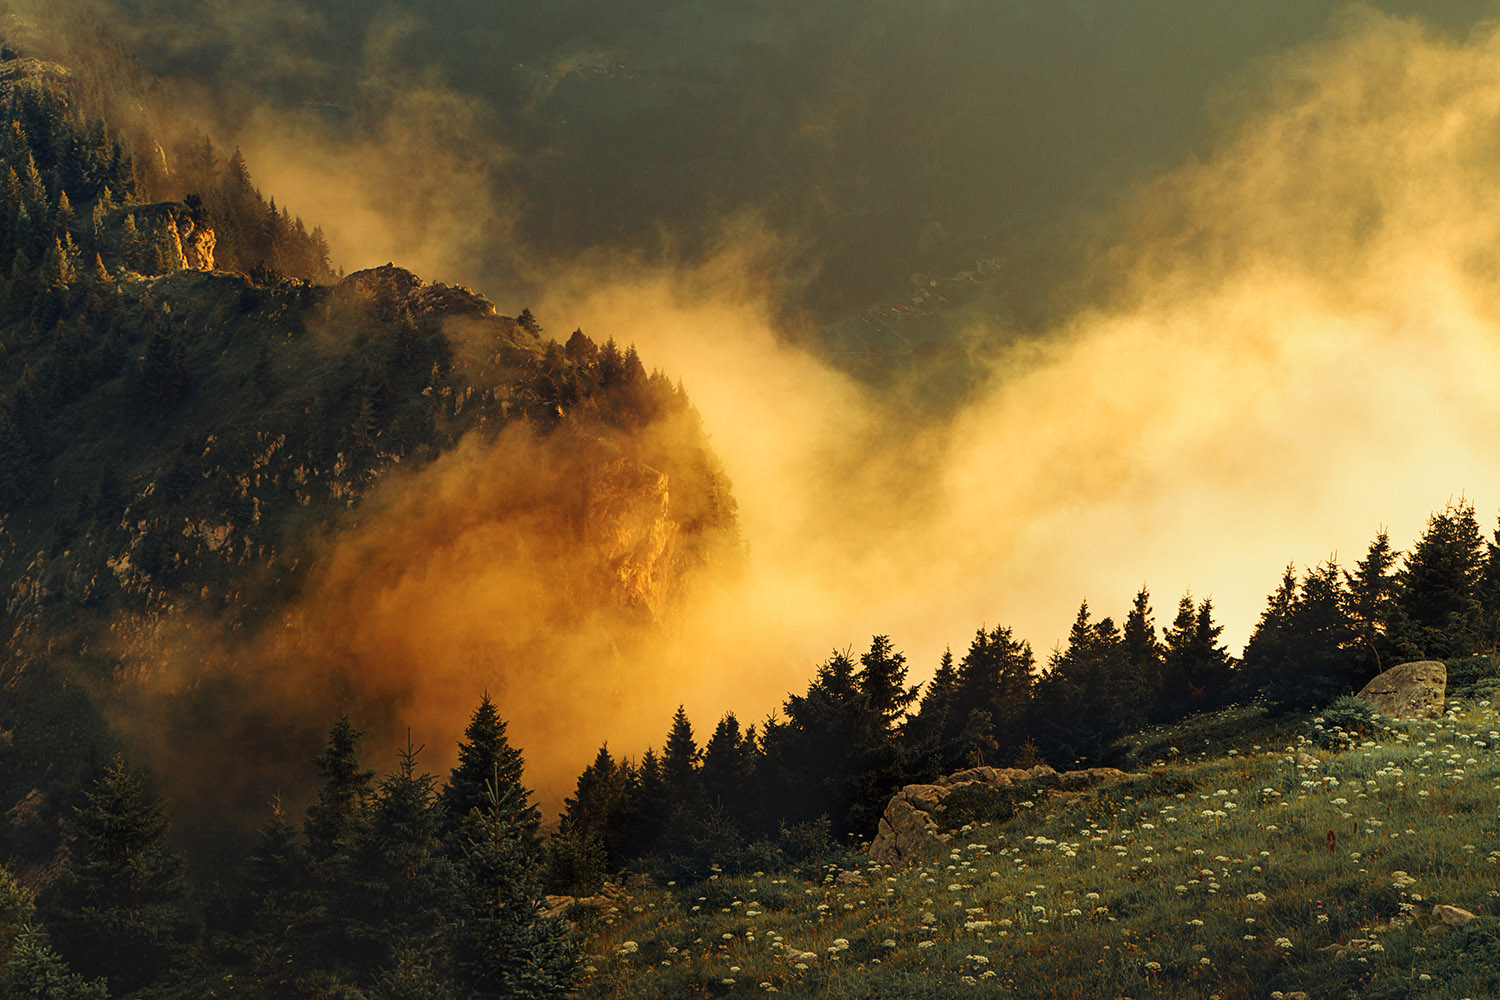 Raphaelle Monvoisin, The Golden Mist, Dusk French Alps mountains